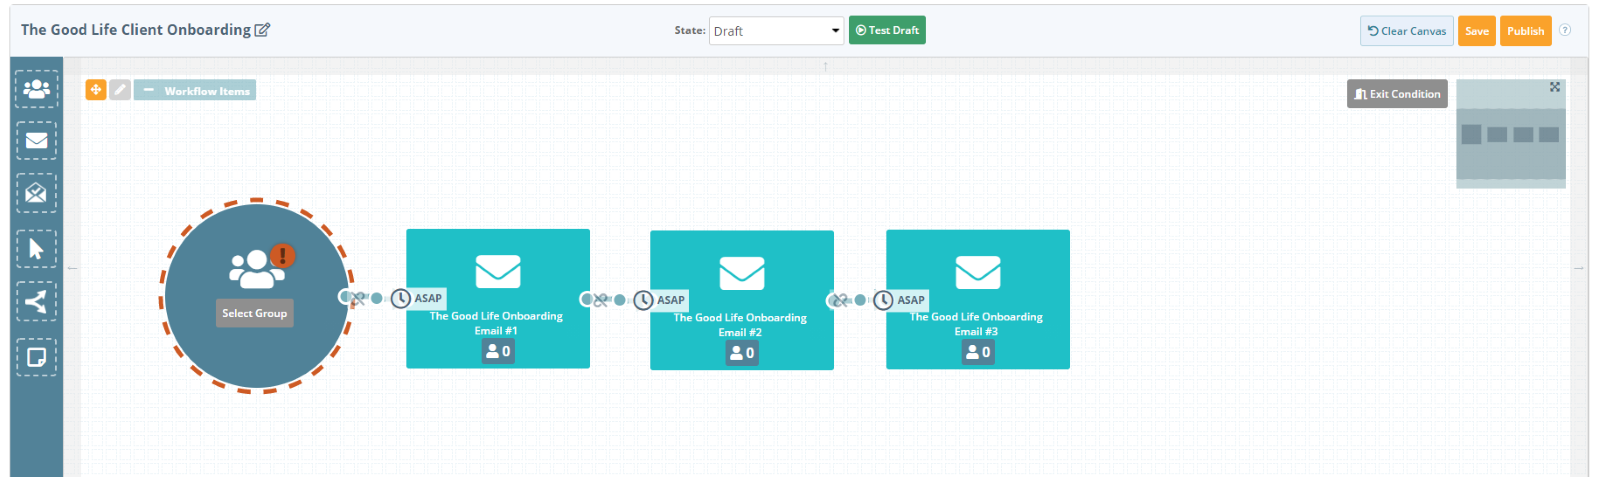 Insurance email marketing platform screen shot of the nurture series workflow builder